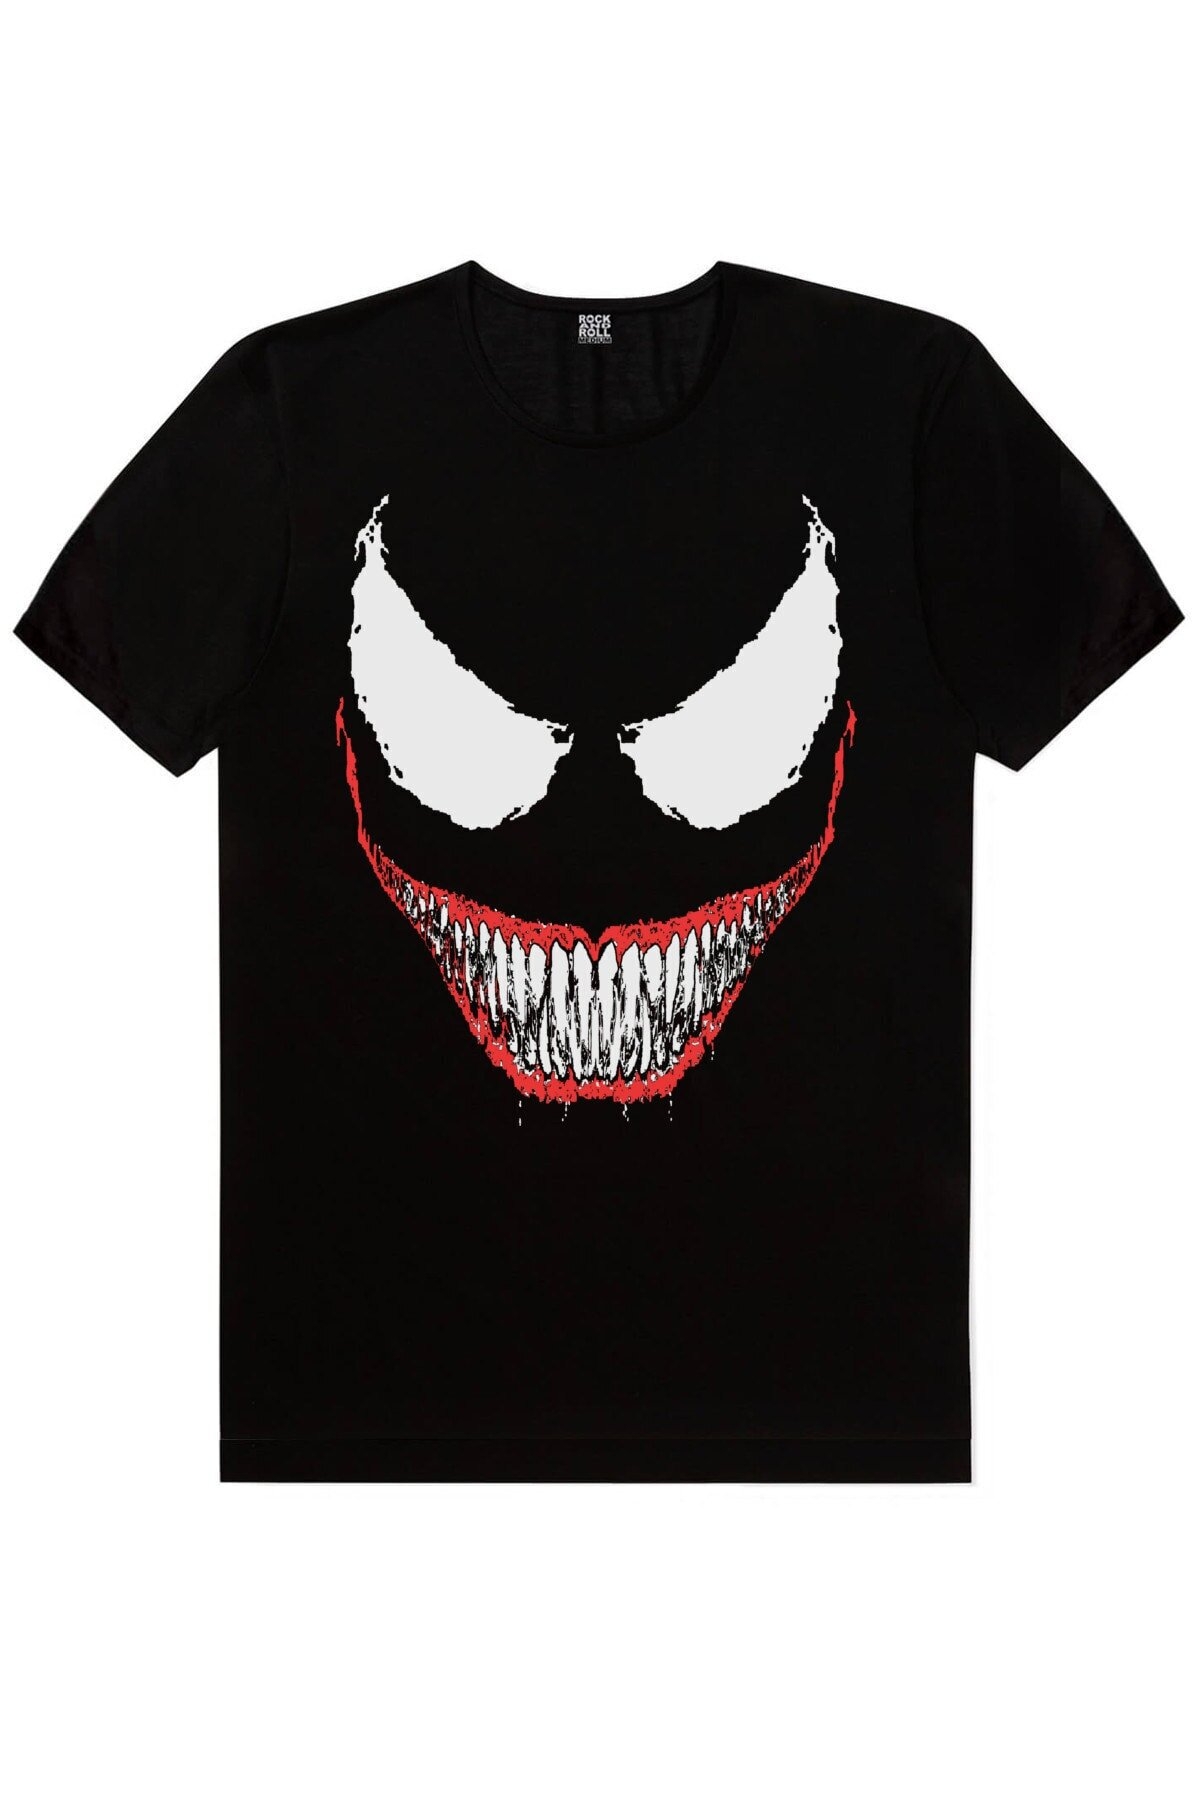 Örümcek Kurukafa, Timsah Dişler Erkek 2'li Eko Paket T-shirt